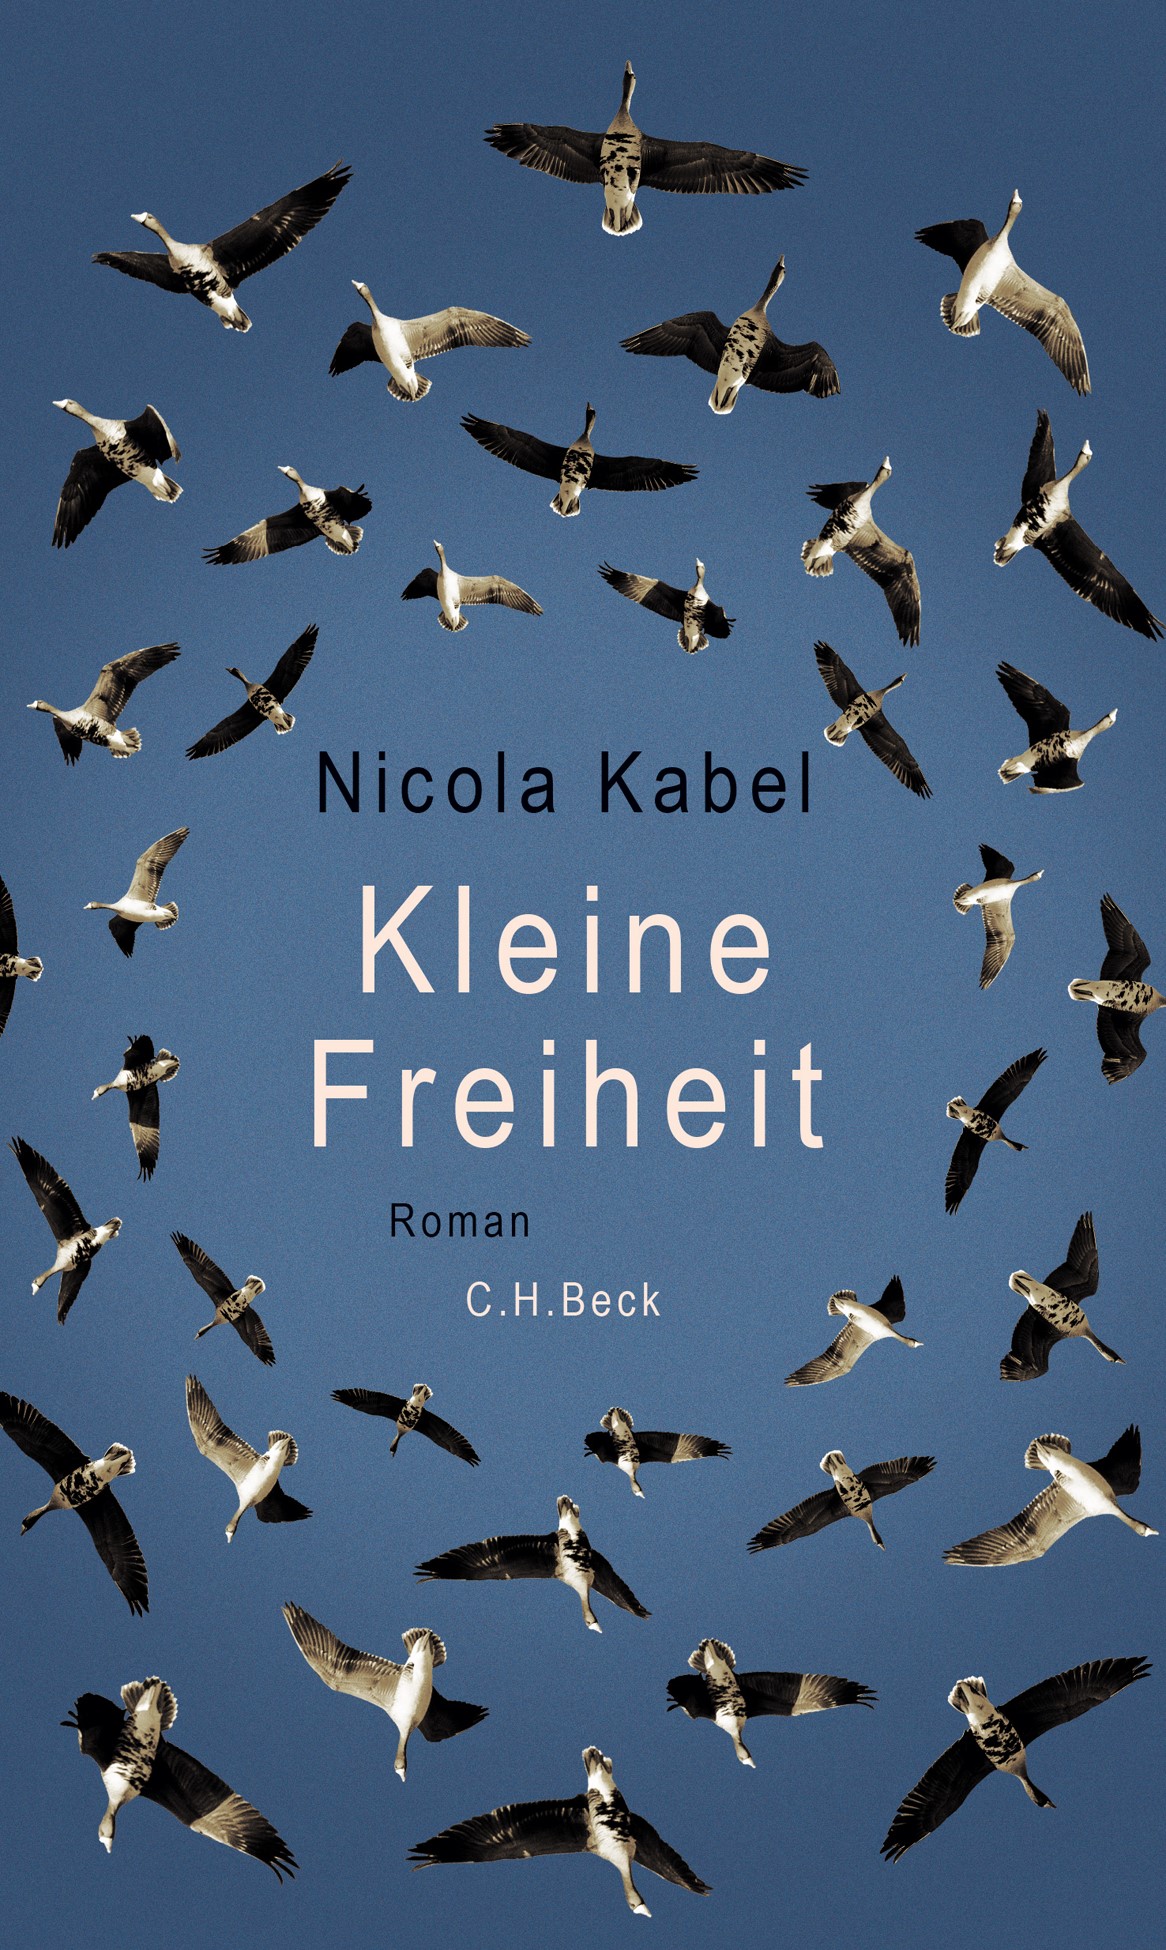 Nicola Kabel Kleine Freiheit